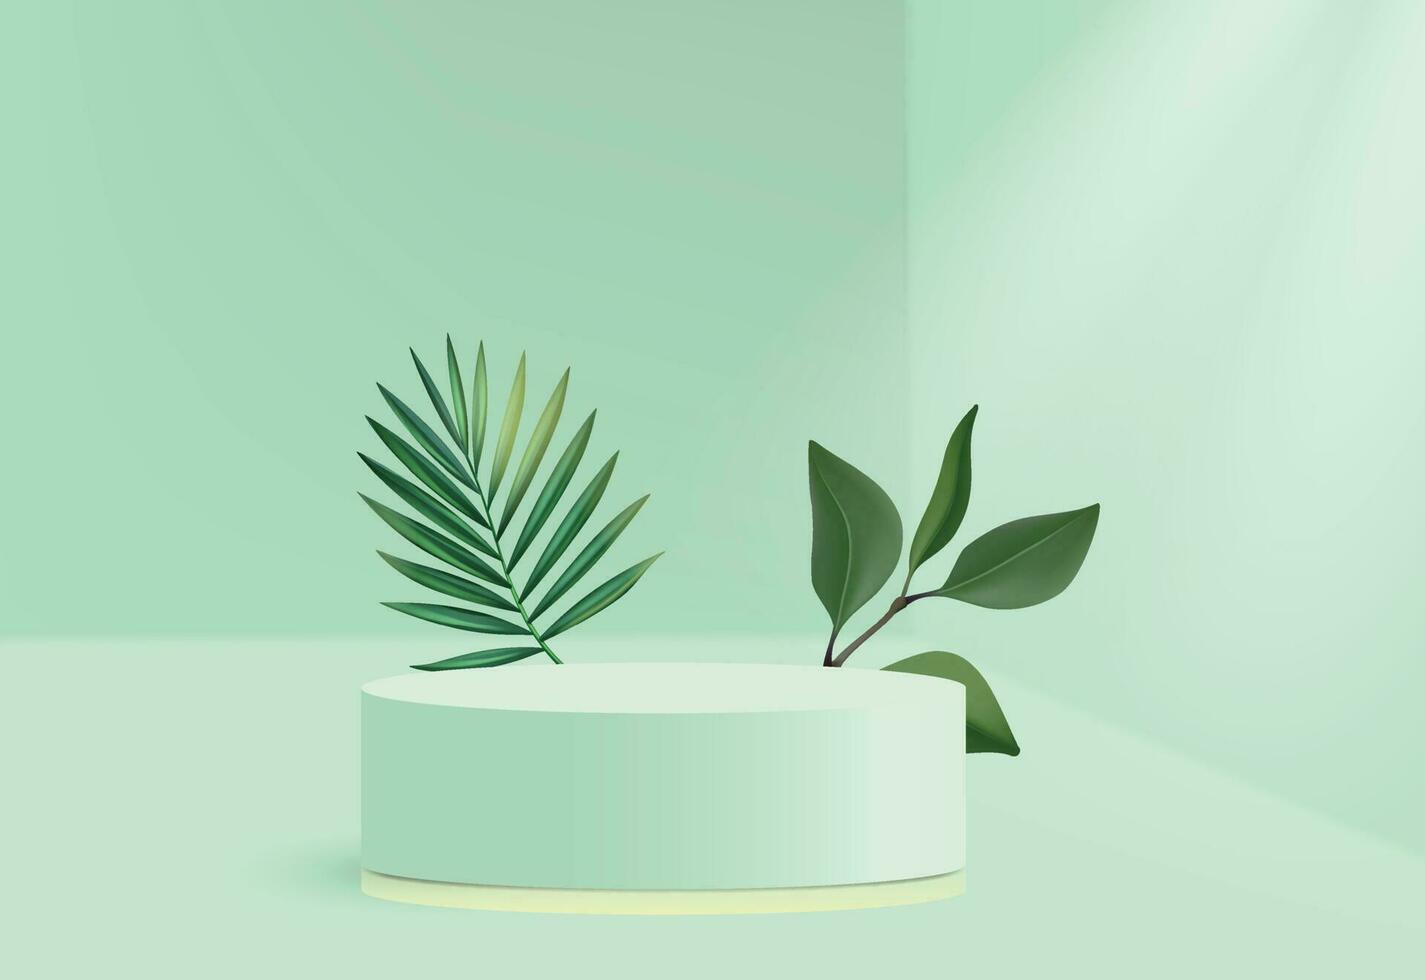 abstract groen platform podium - 3d kunstmatig Product presentatie vector